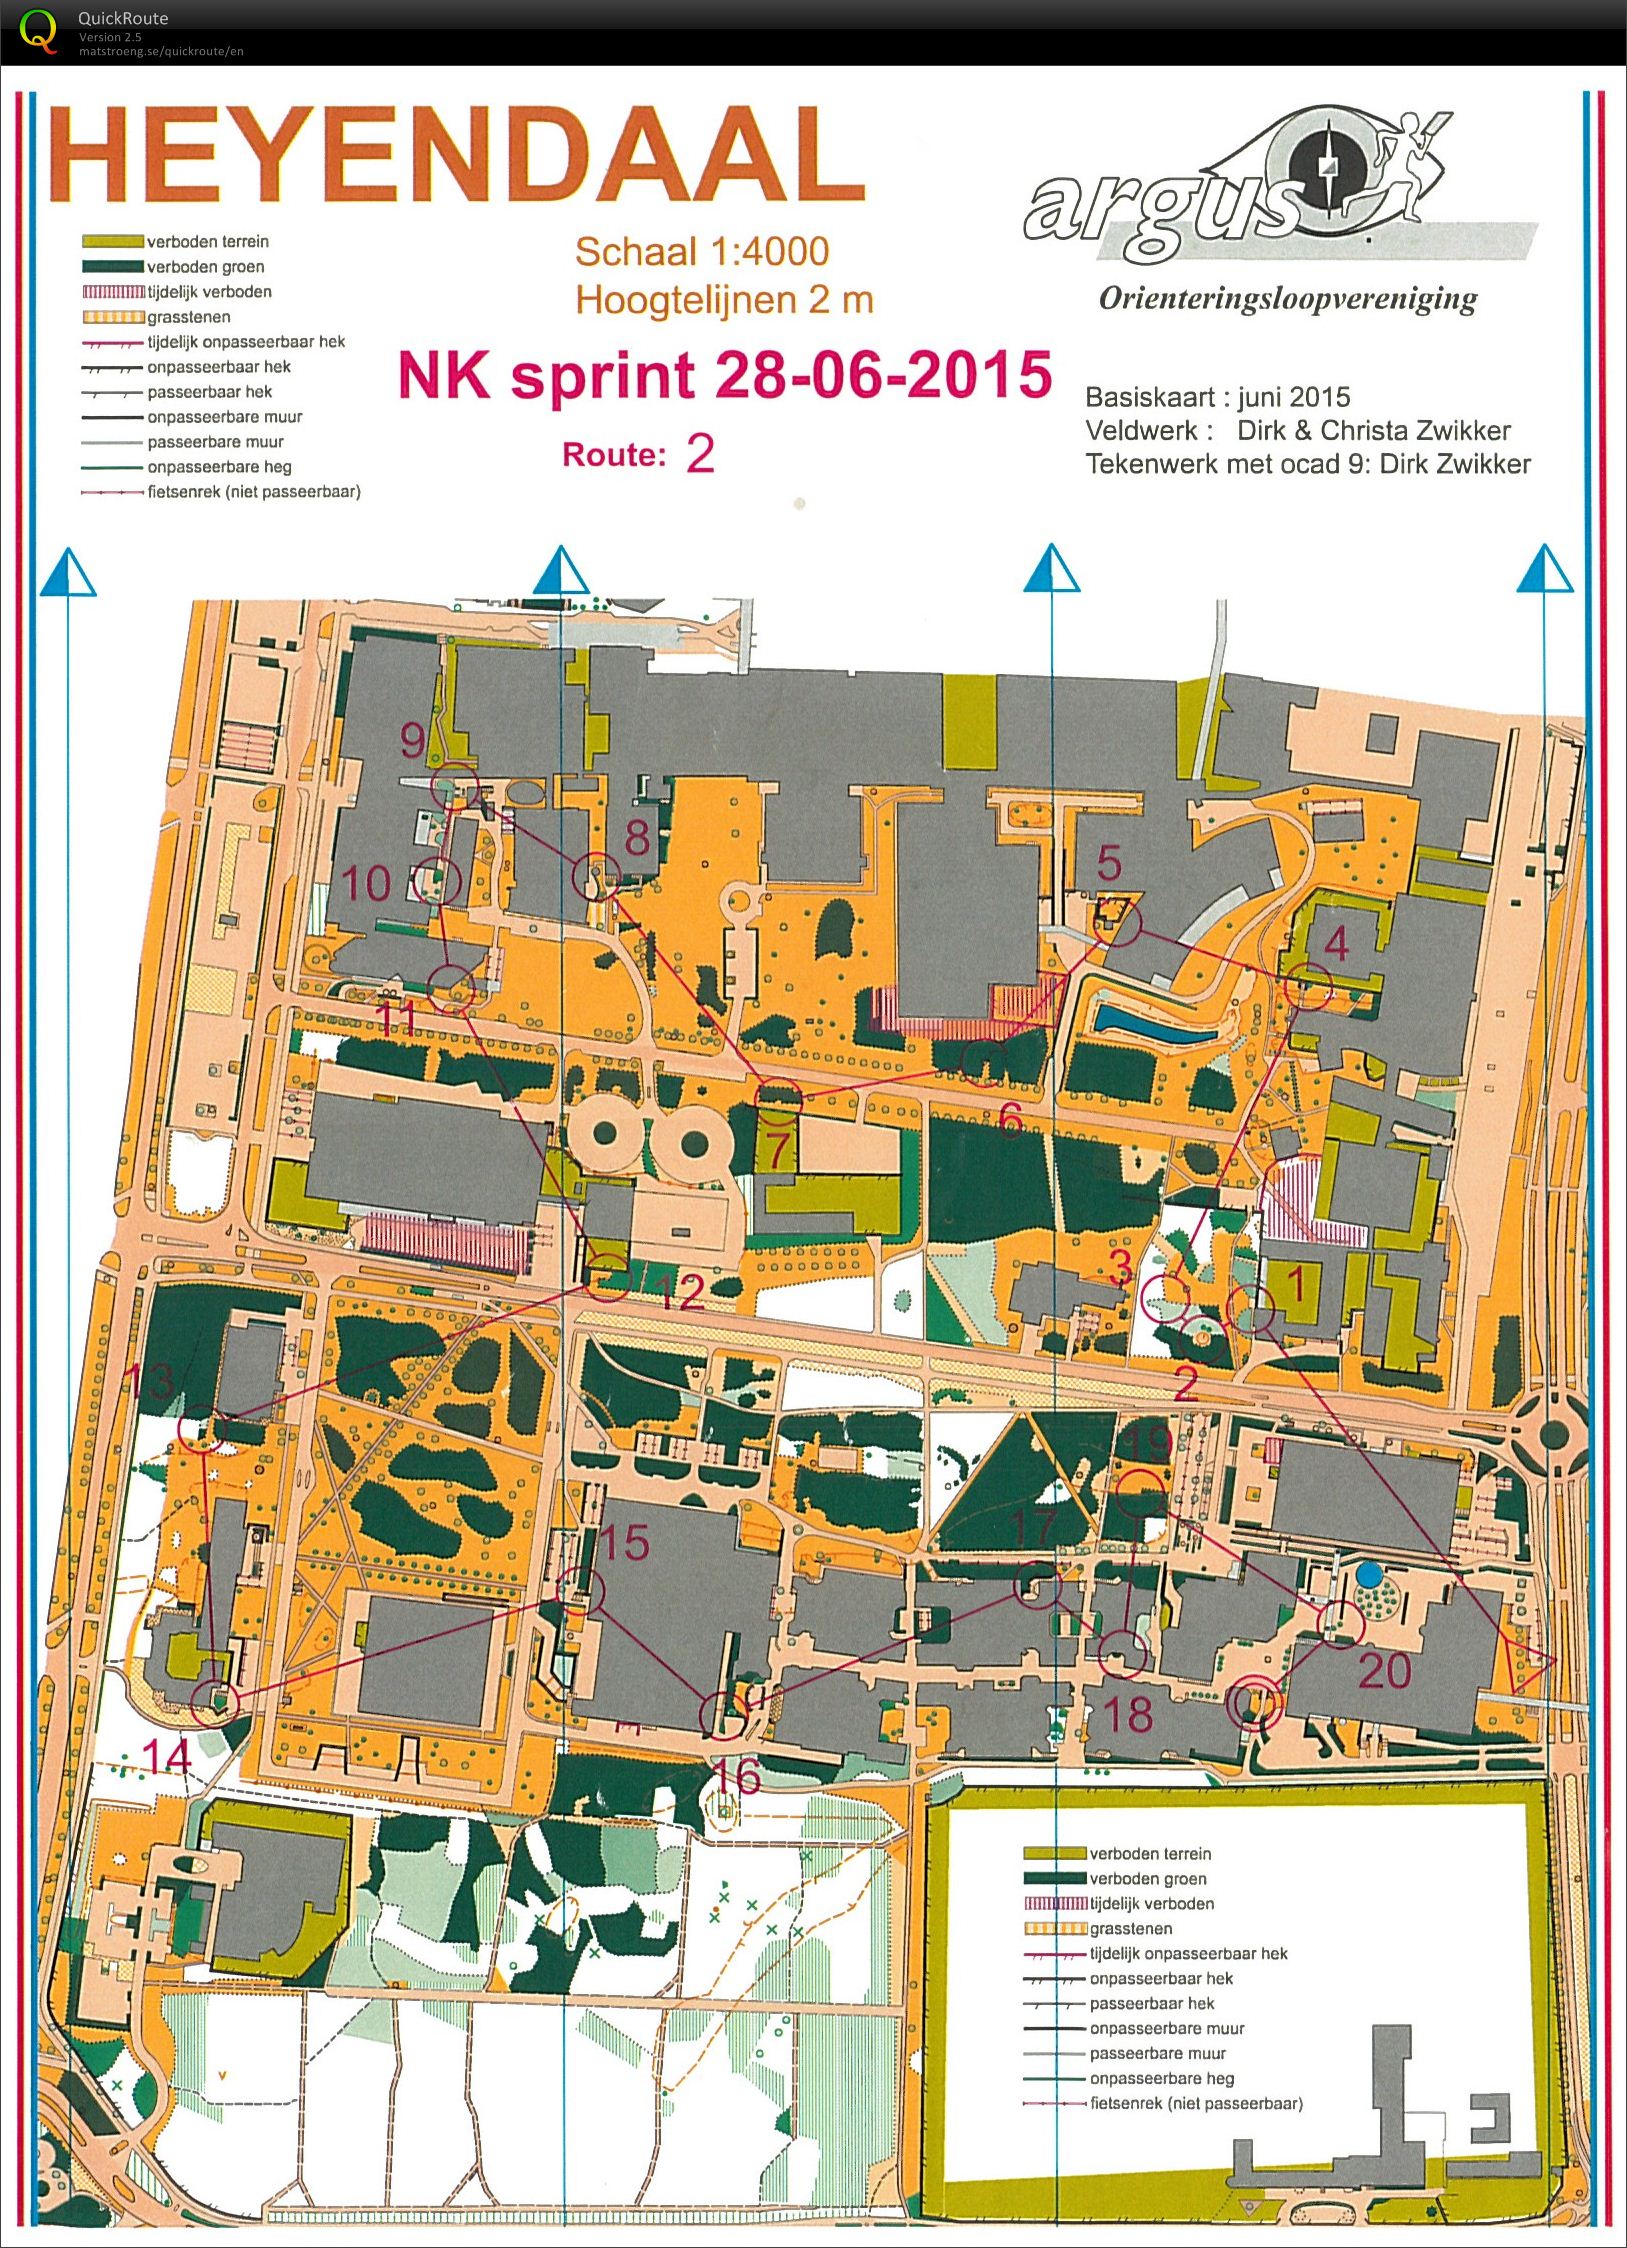 NK Sprint Heyendaal (28/06/2015)